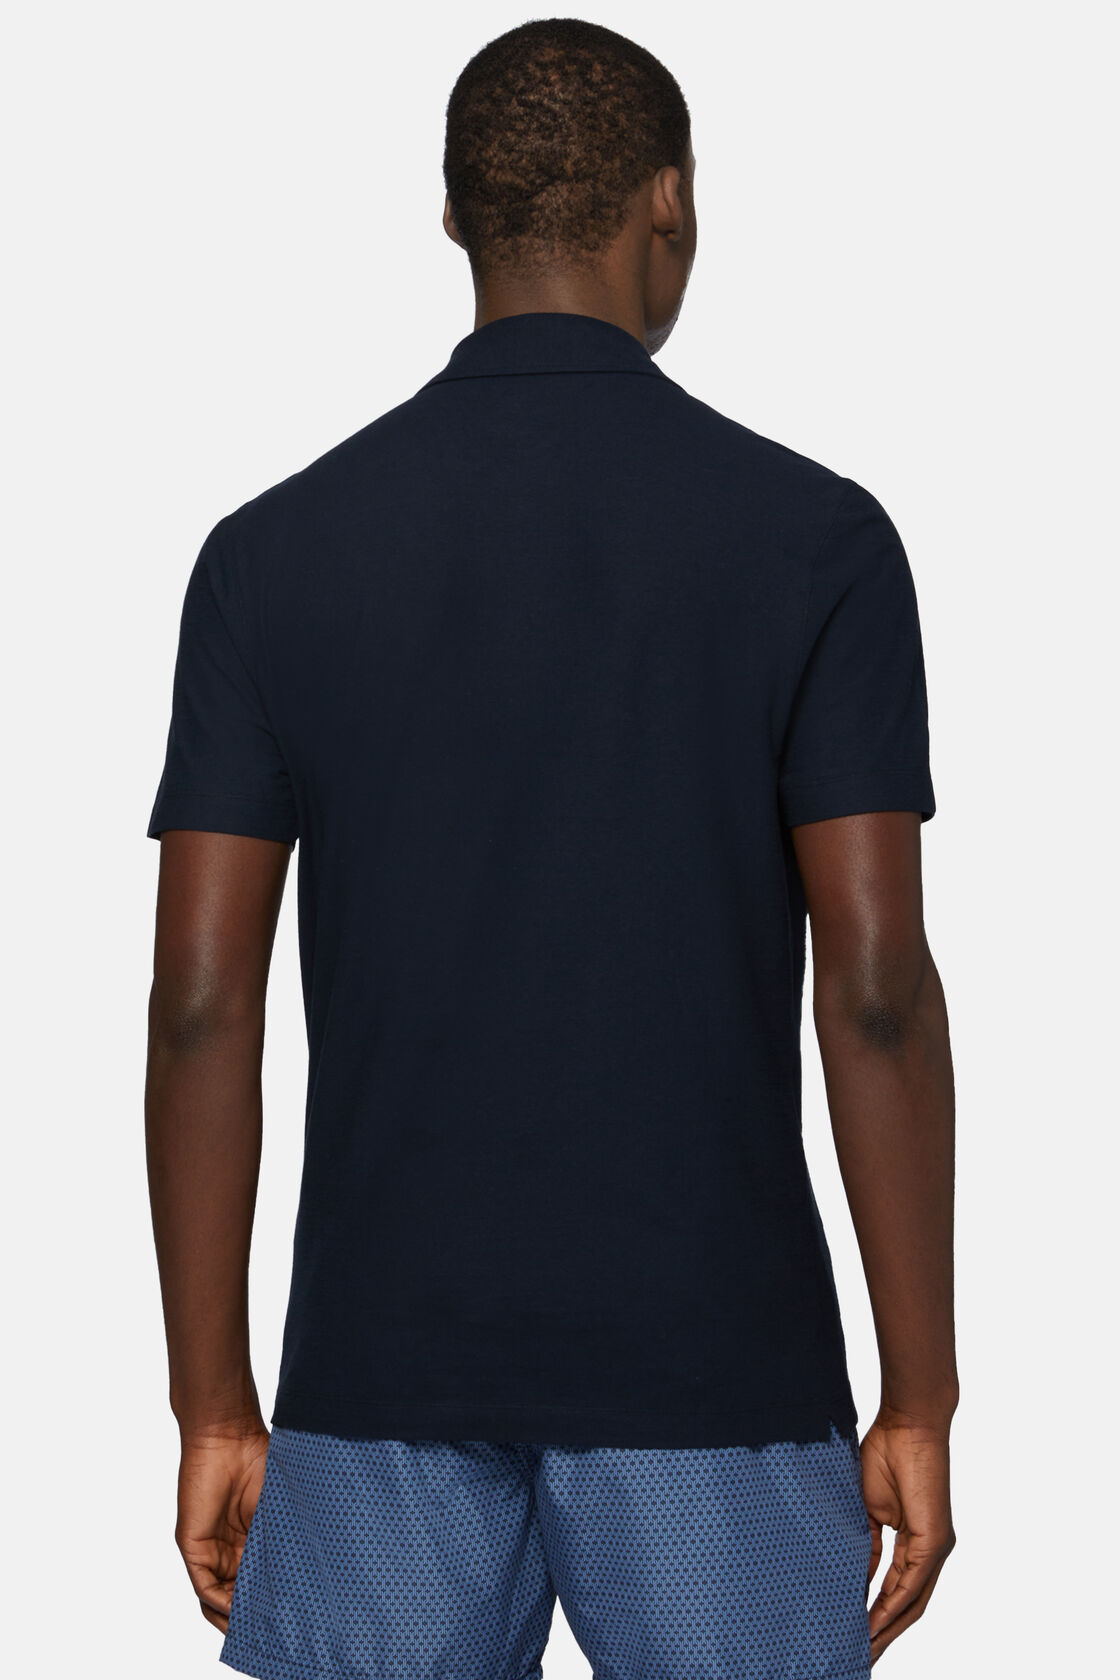 Βαμβακερό κρεπ μπλουζάκι τύπου πόλο, Navy blue, hi-res